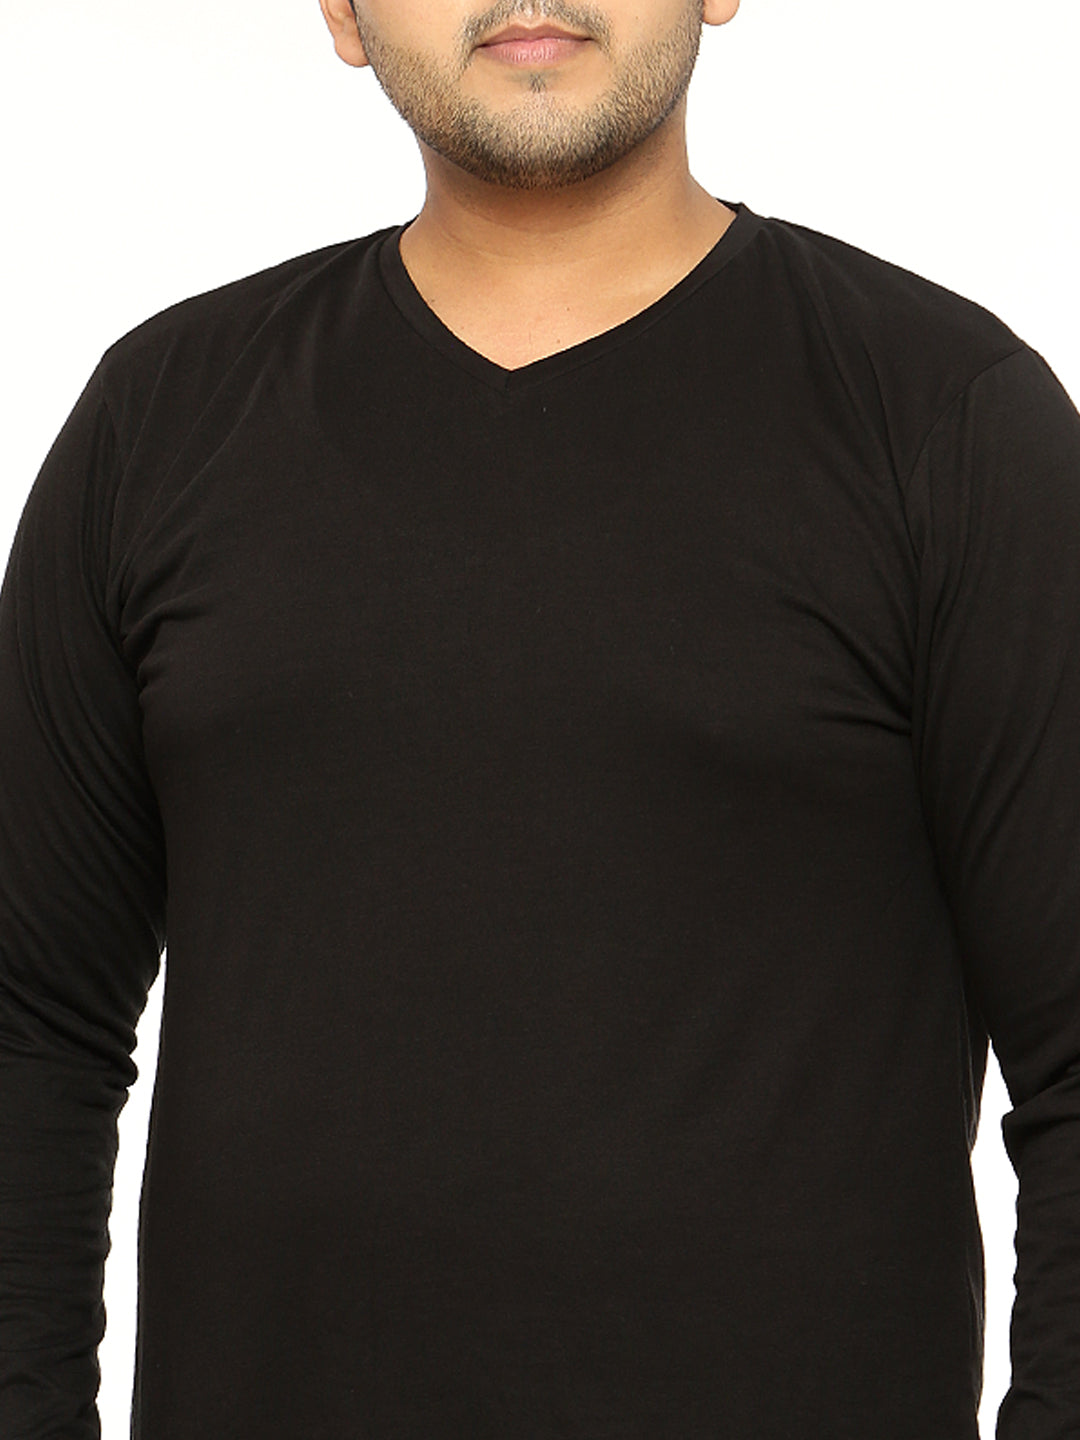 Black Plus Size V Neck T-Shirt